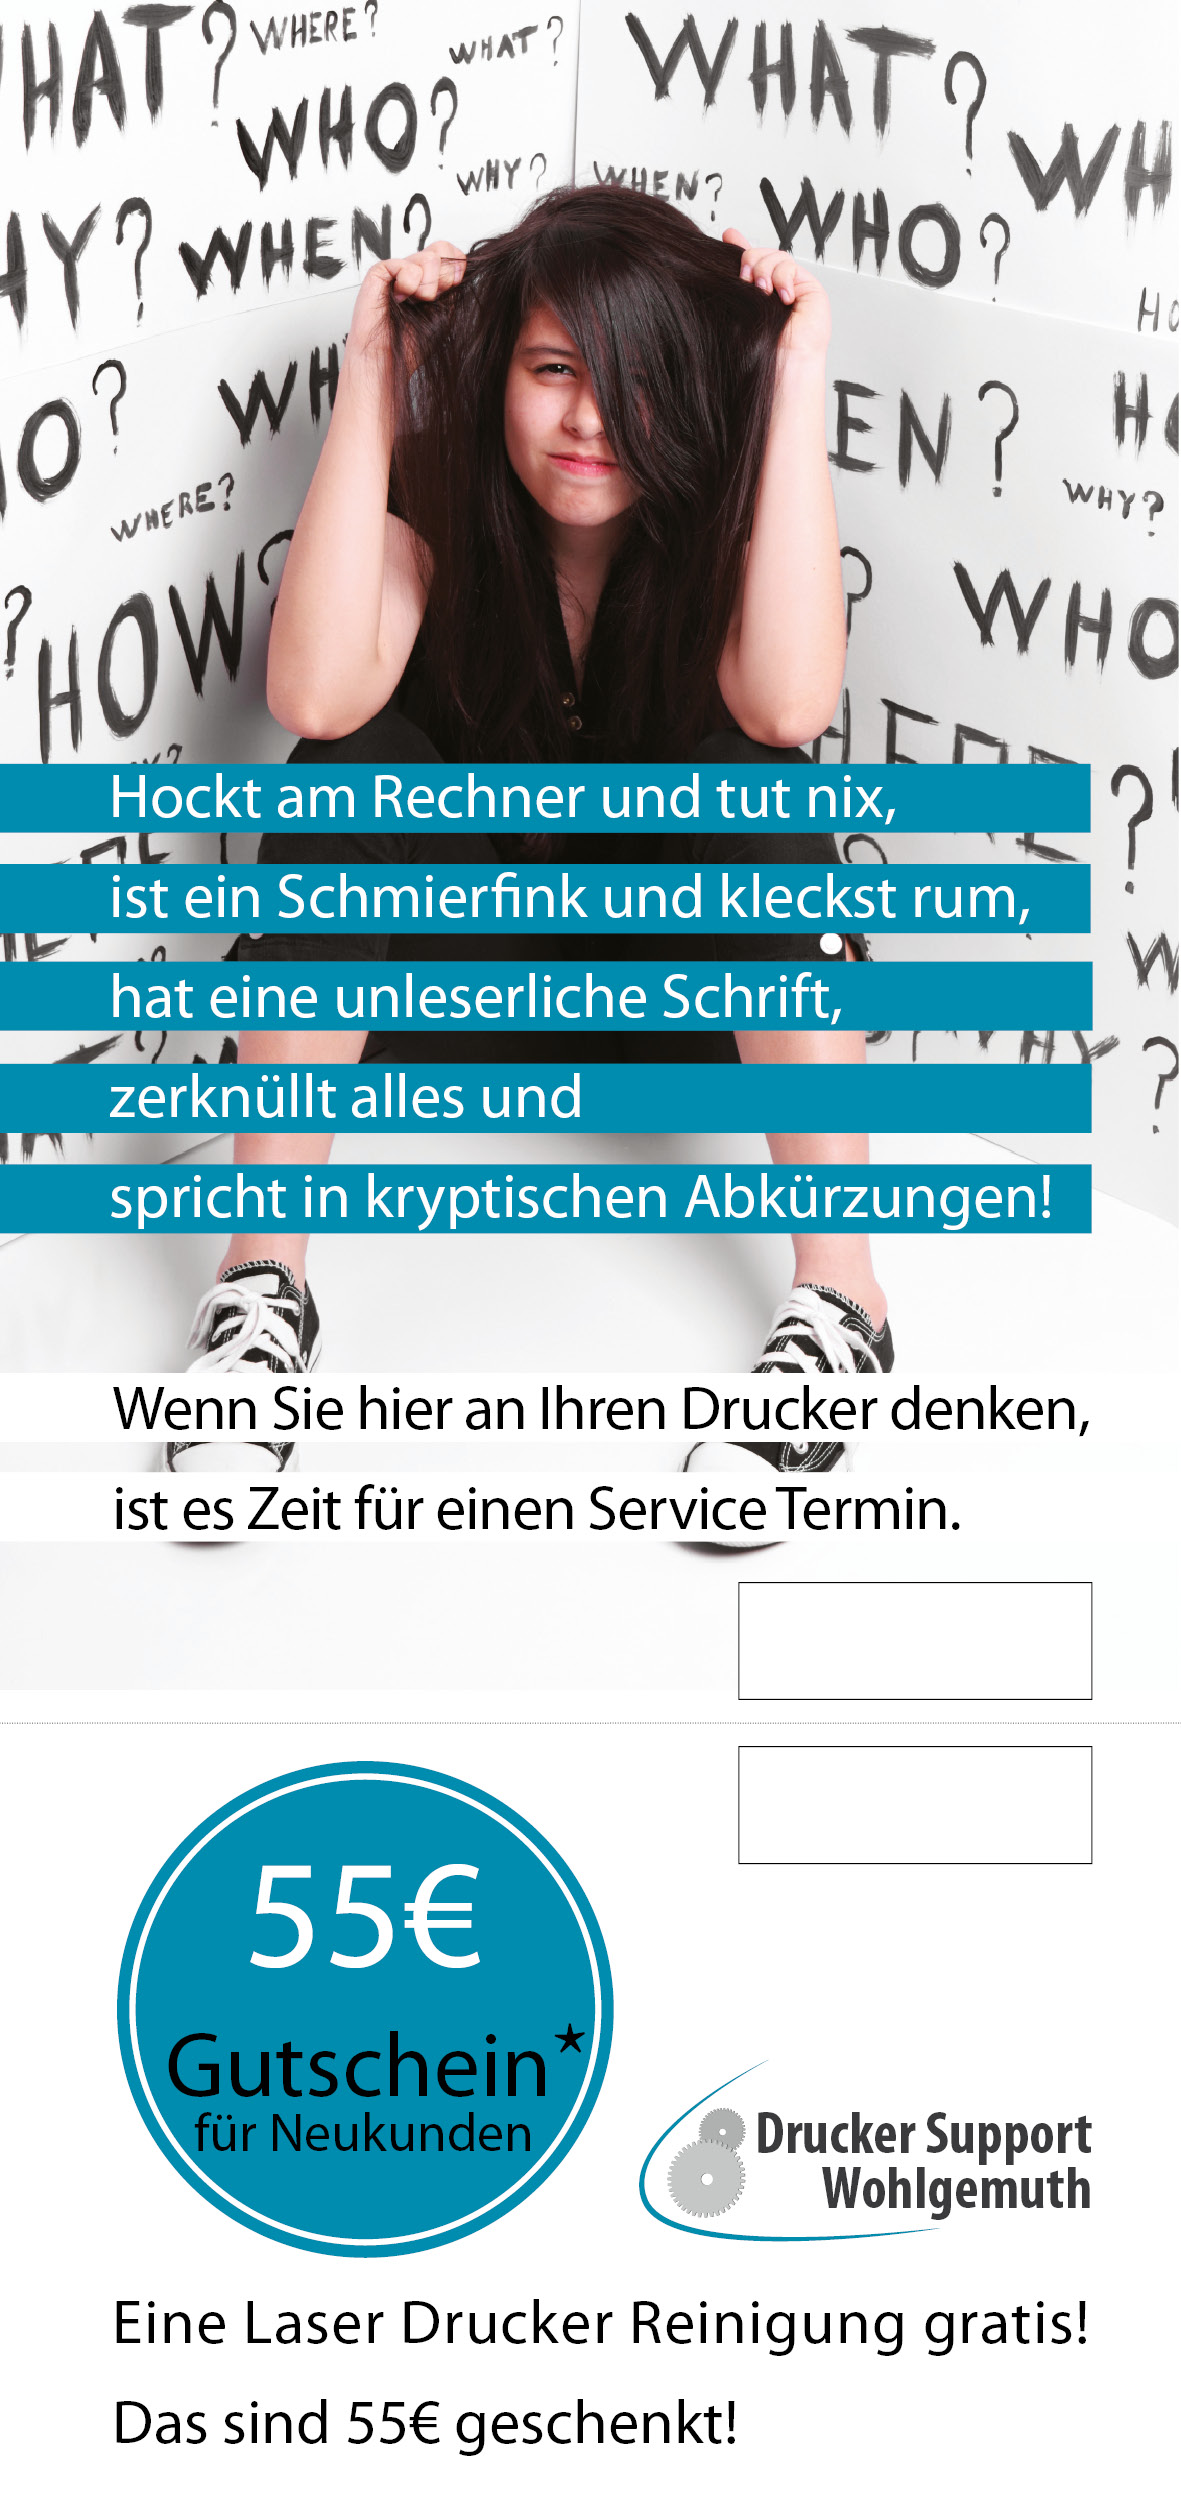 flyer Drucker Support Wohlgemuth 1.jpg